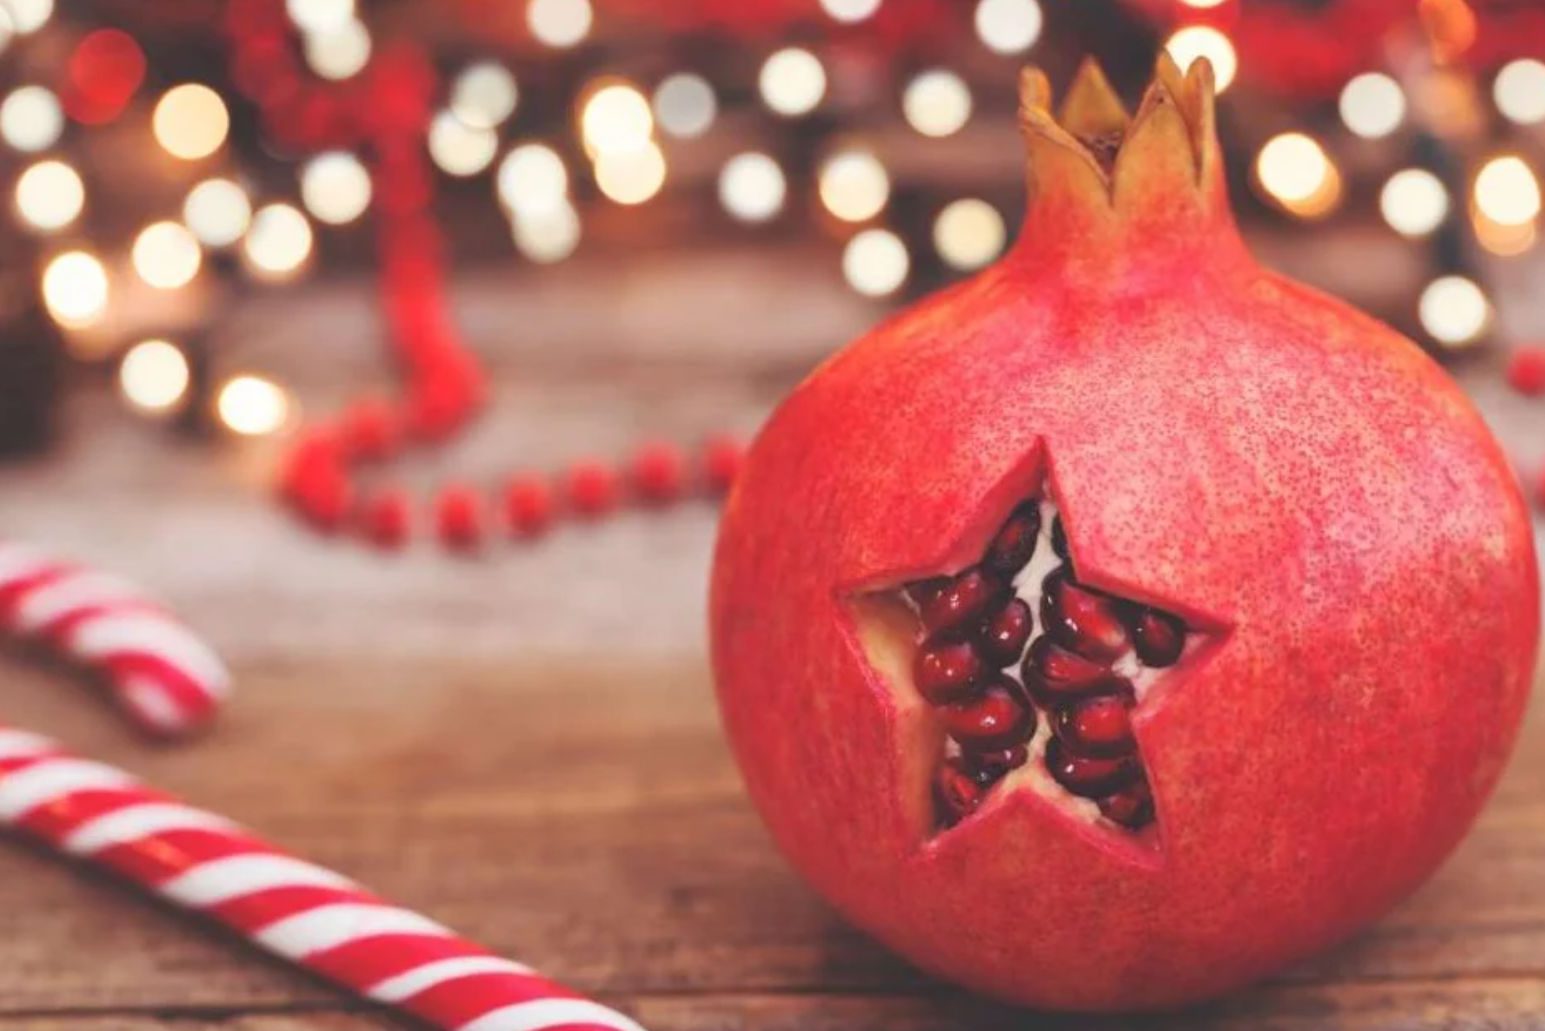 Τα έθιμα της Πρωτοχρονιάς στην Εύβοια – Το ρόδι, η κρεμμύδα και το αμίλητο νερό